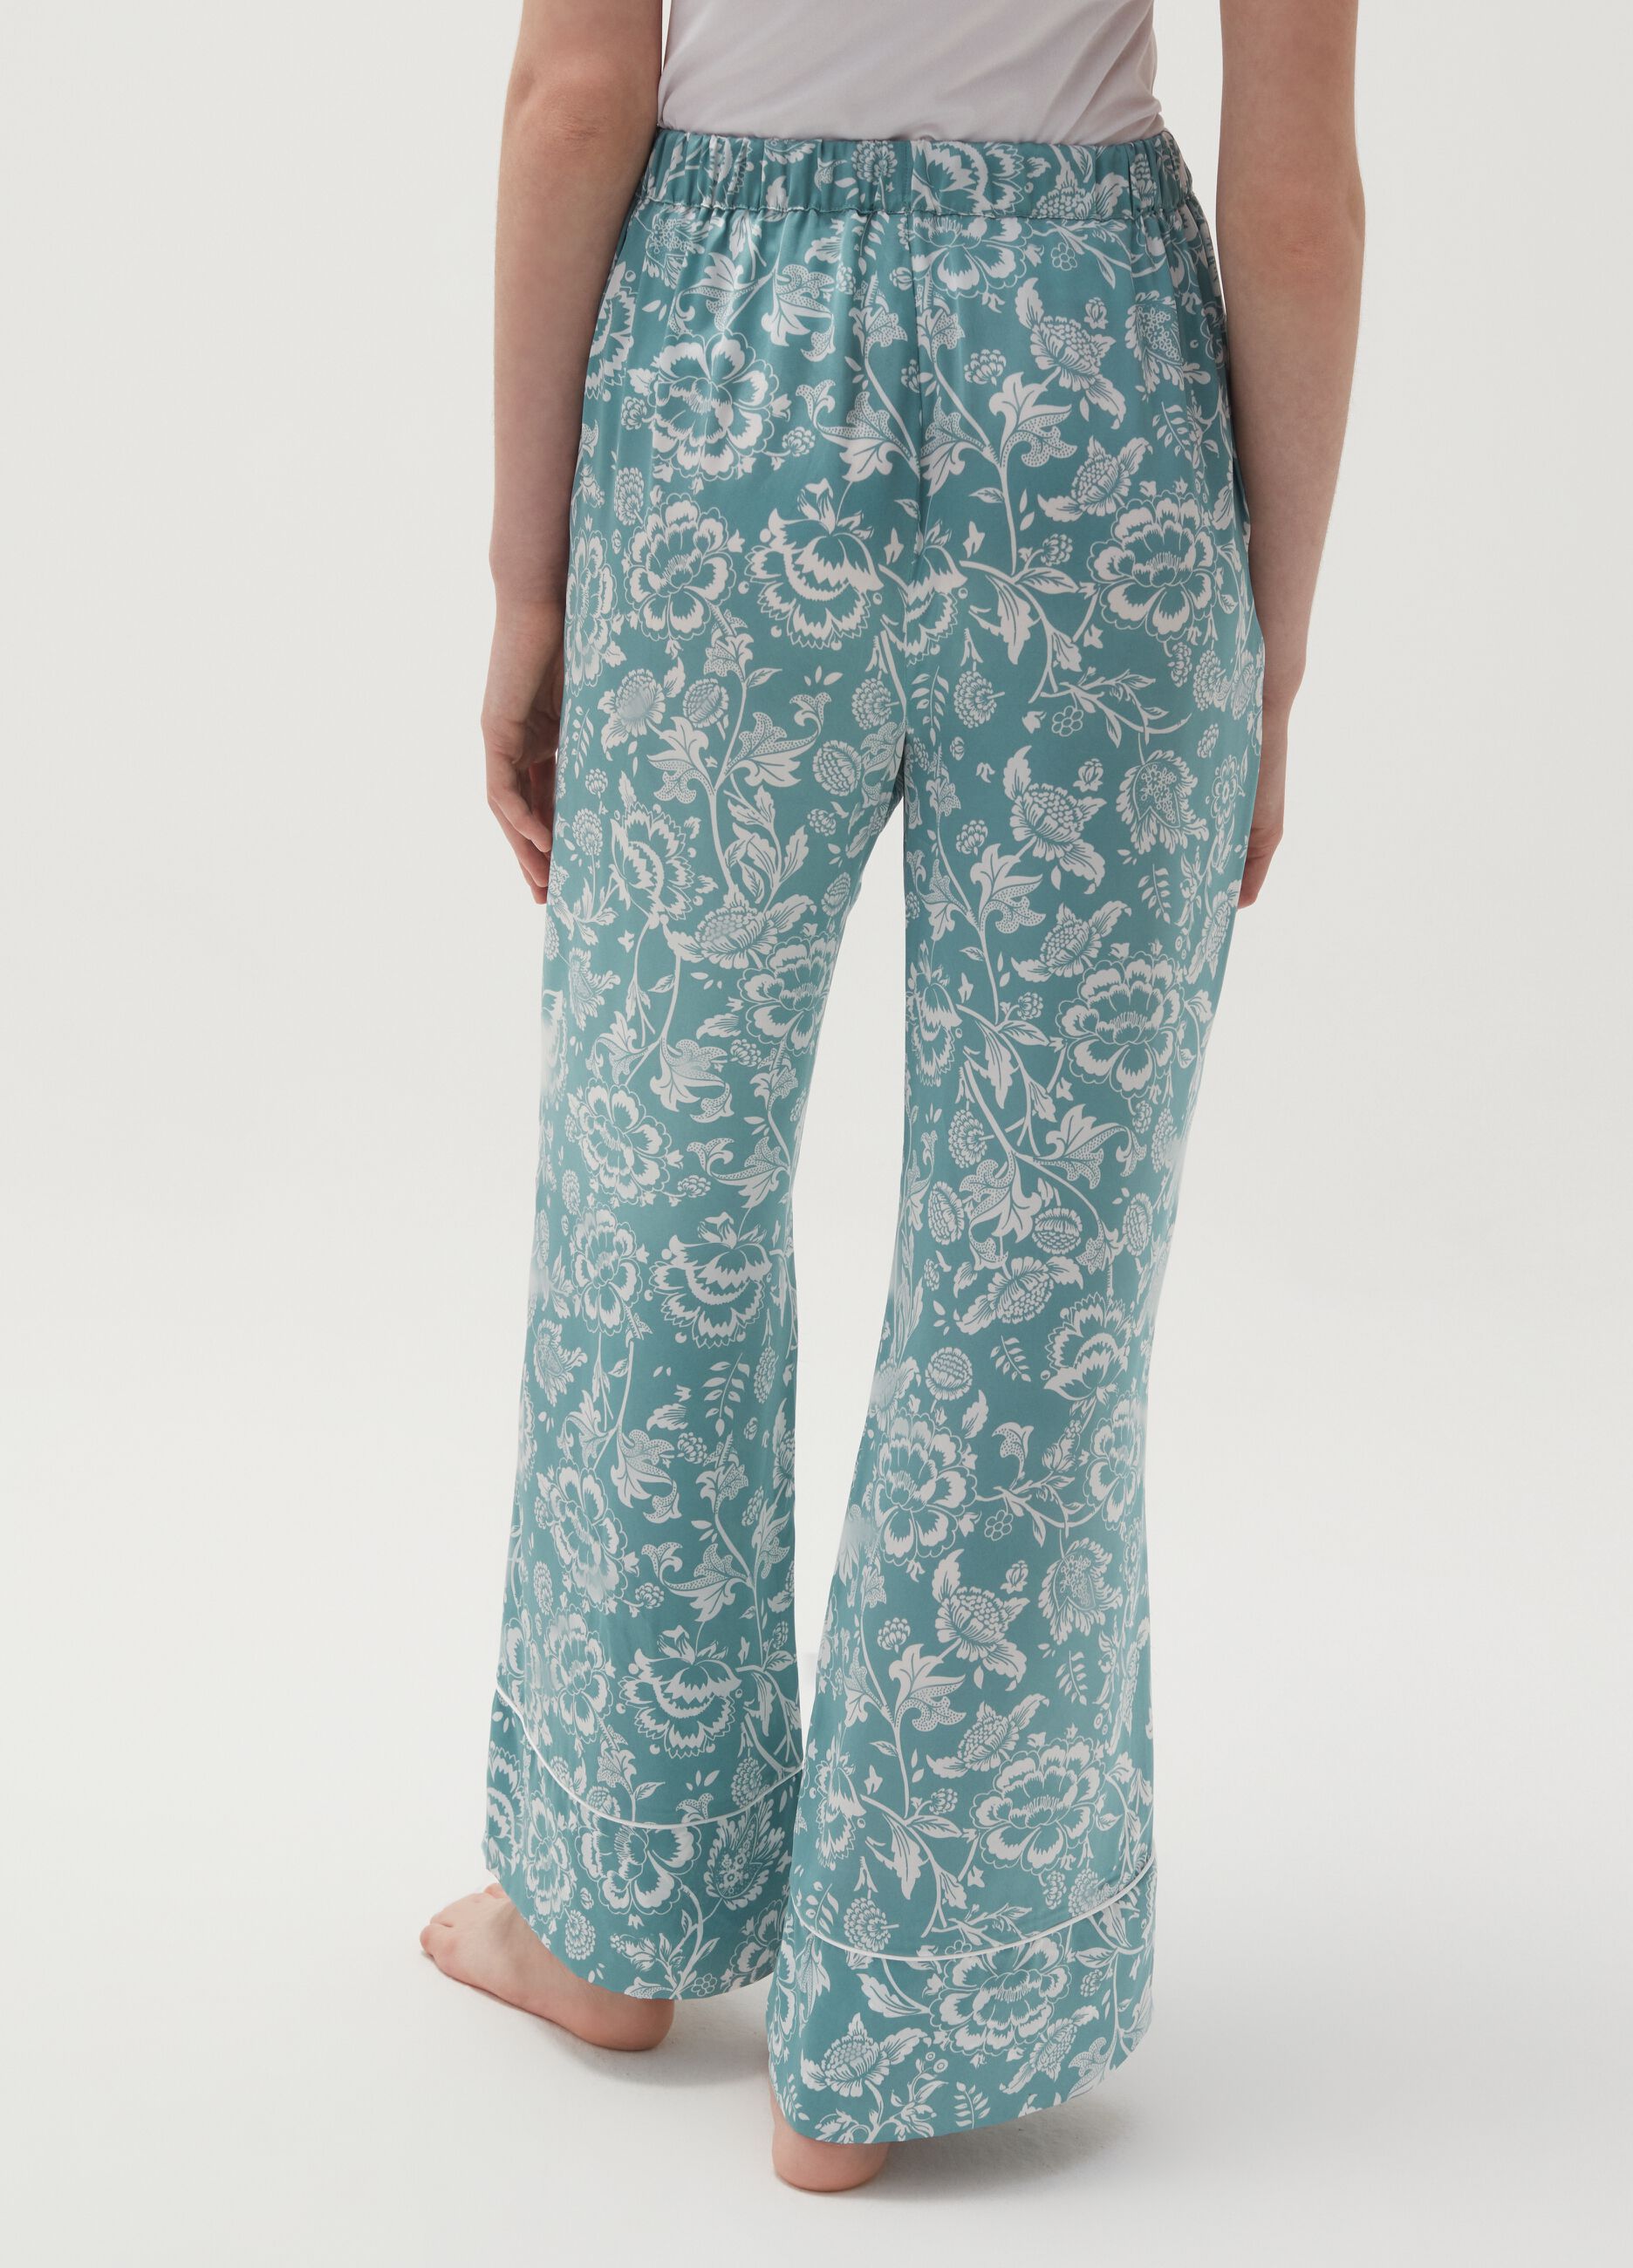 Pantalón pijama wide leg floral